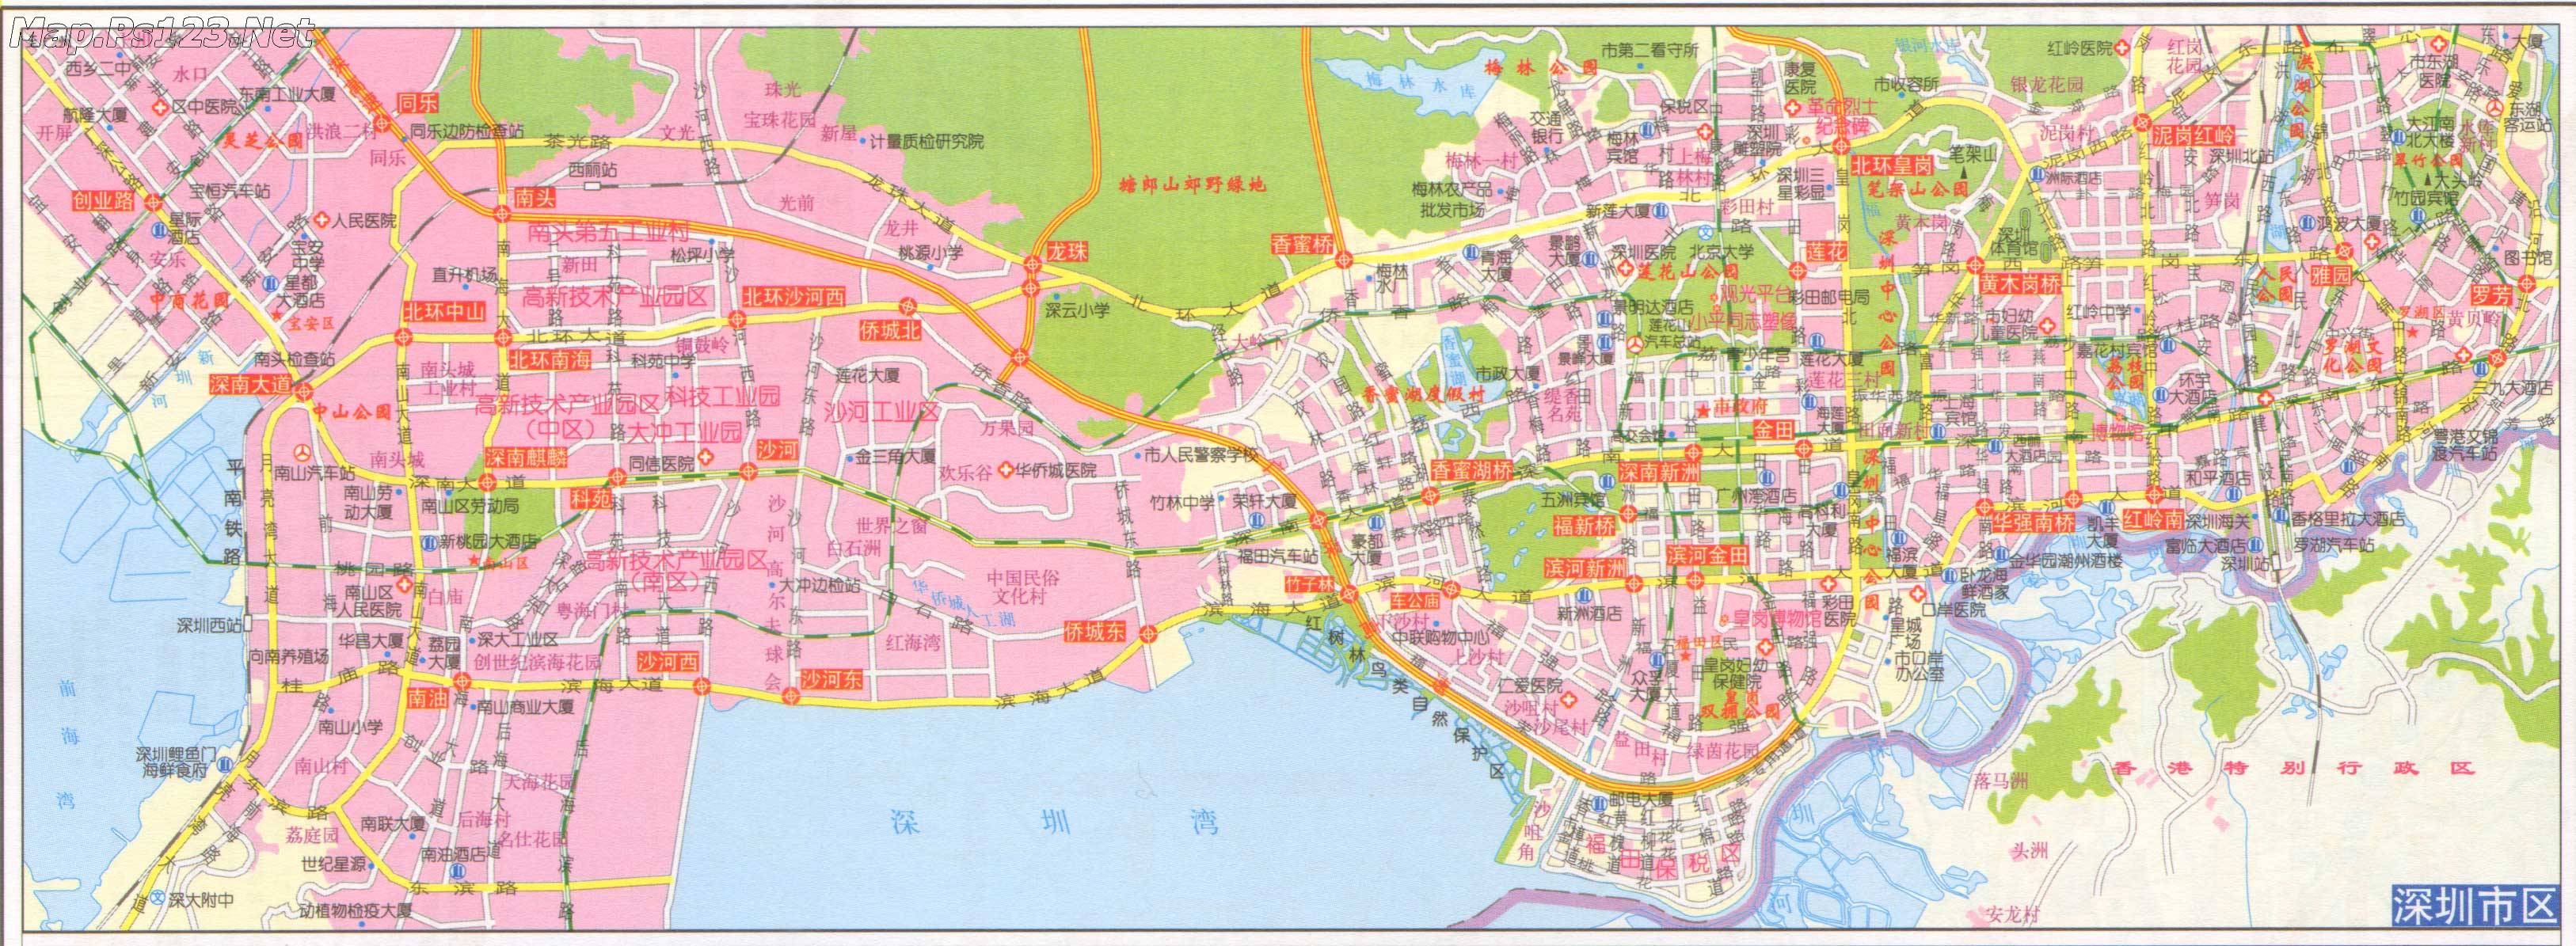 中国地图 广东 深圳市图片